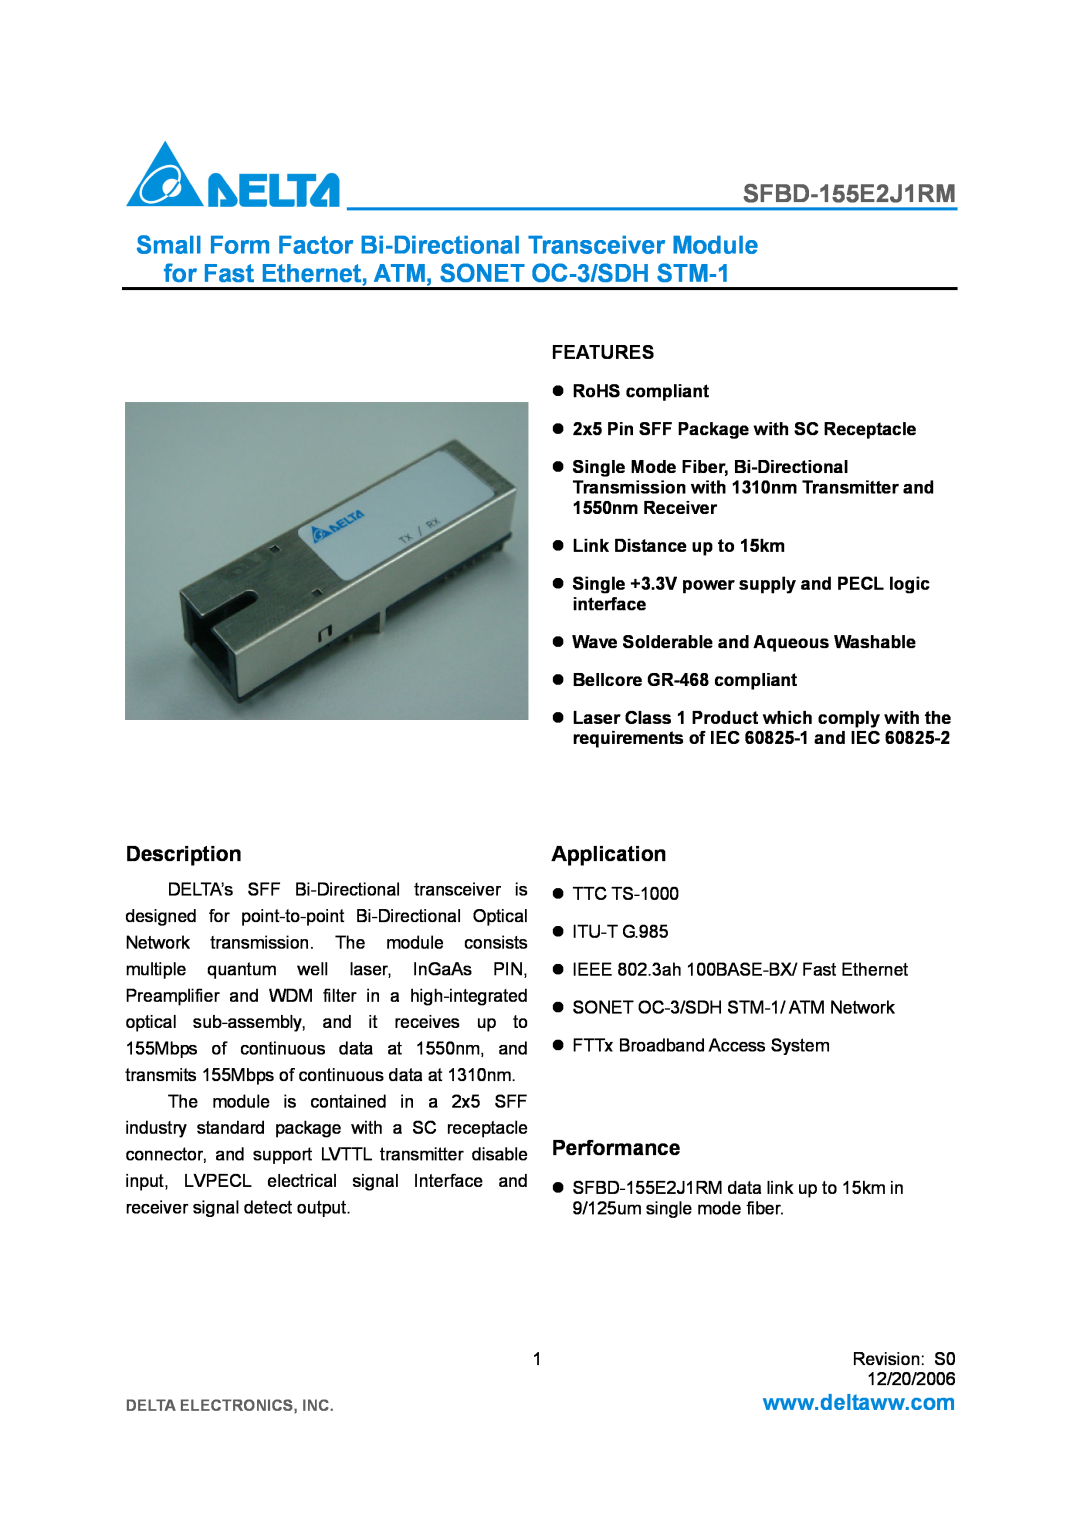 Delta Electronics SFBD-155E2J1RM manual Description, Application, Performance, Features, Link Distance up to 15km 